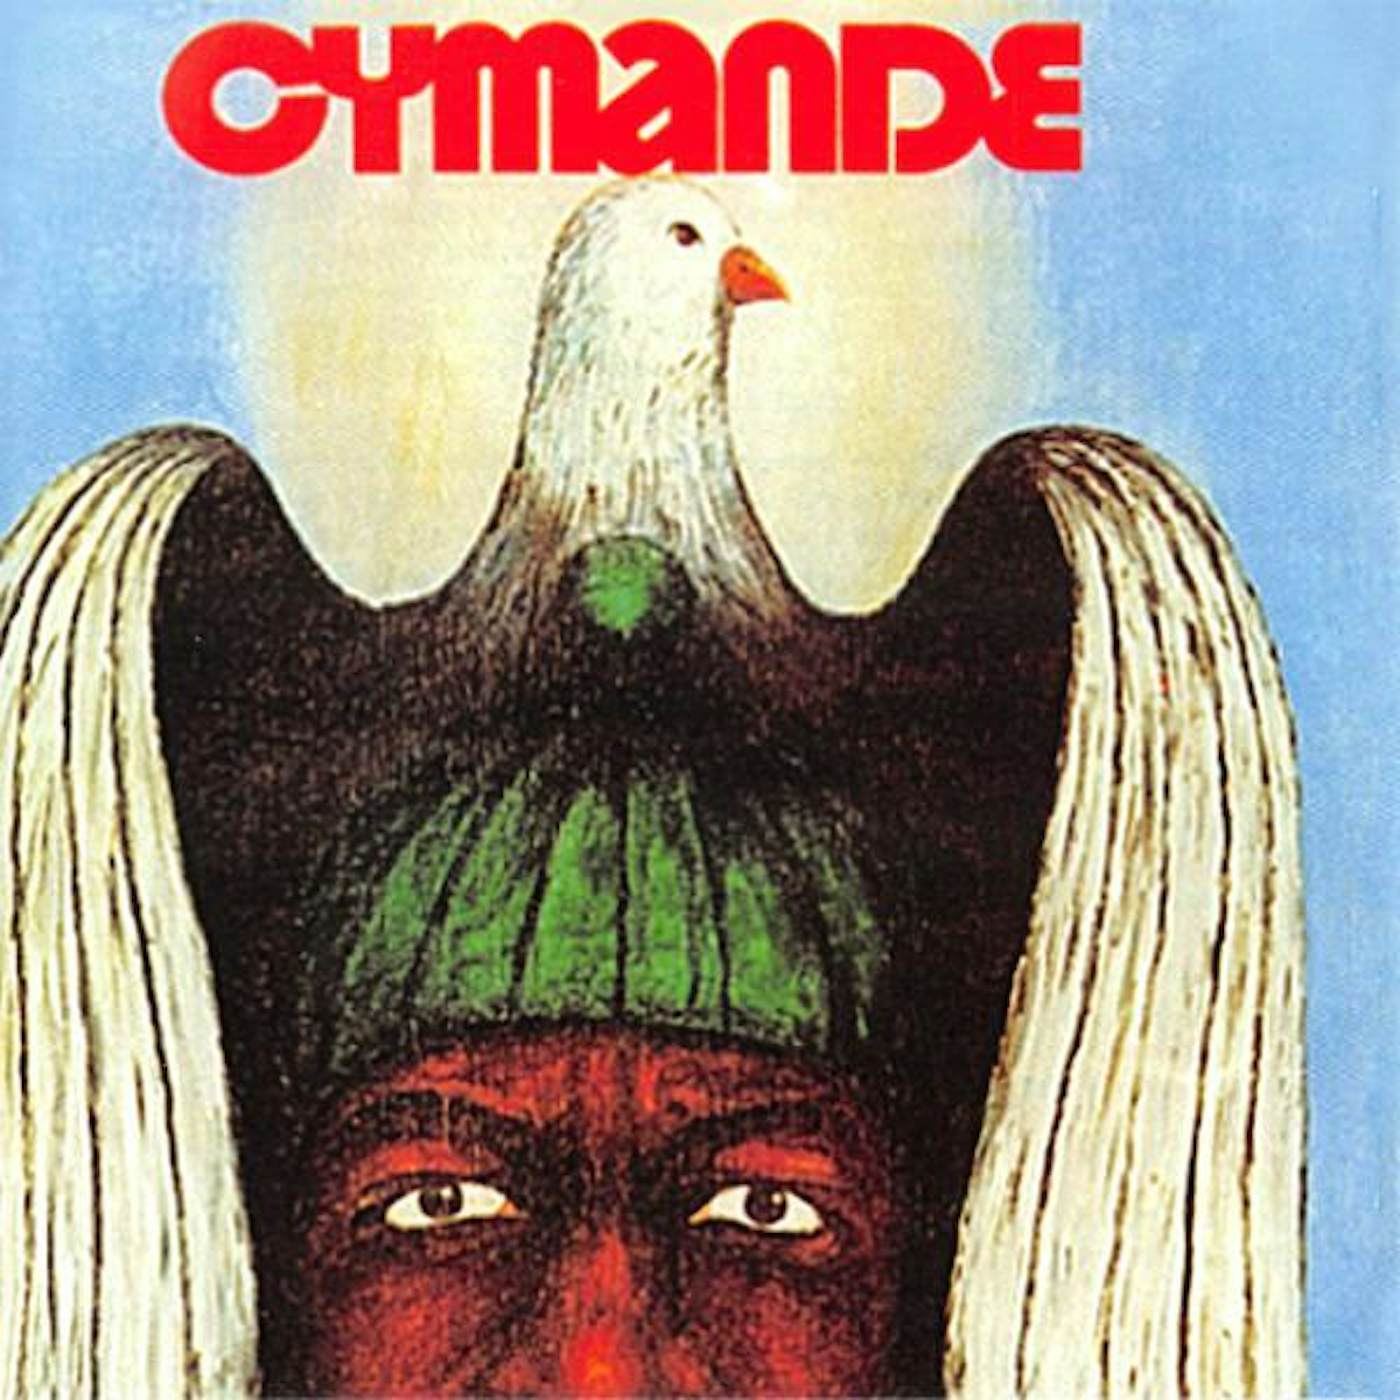 CYMANDE CD